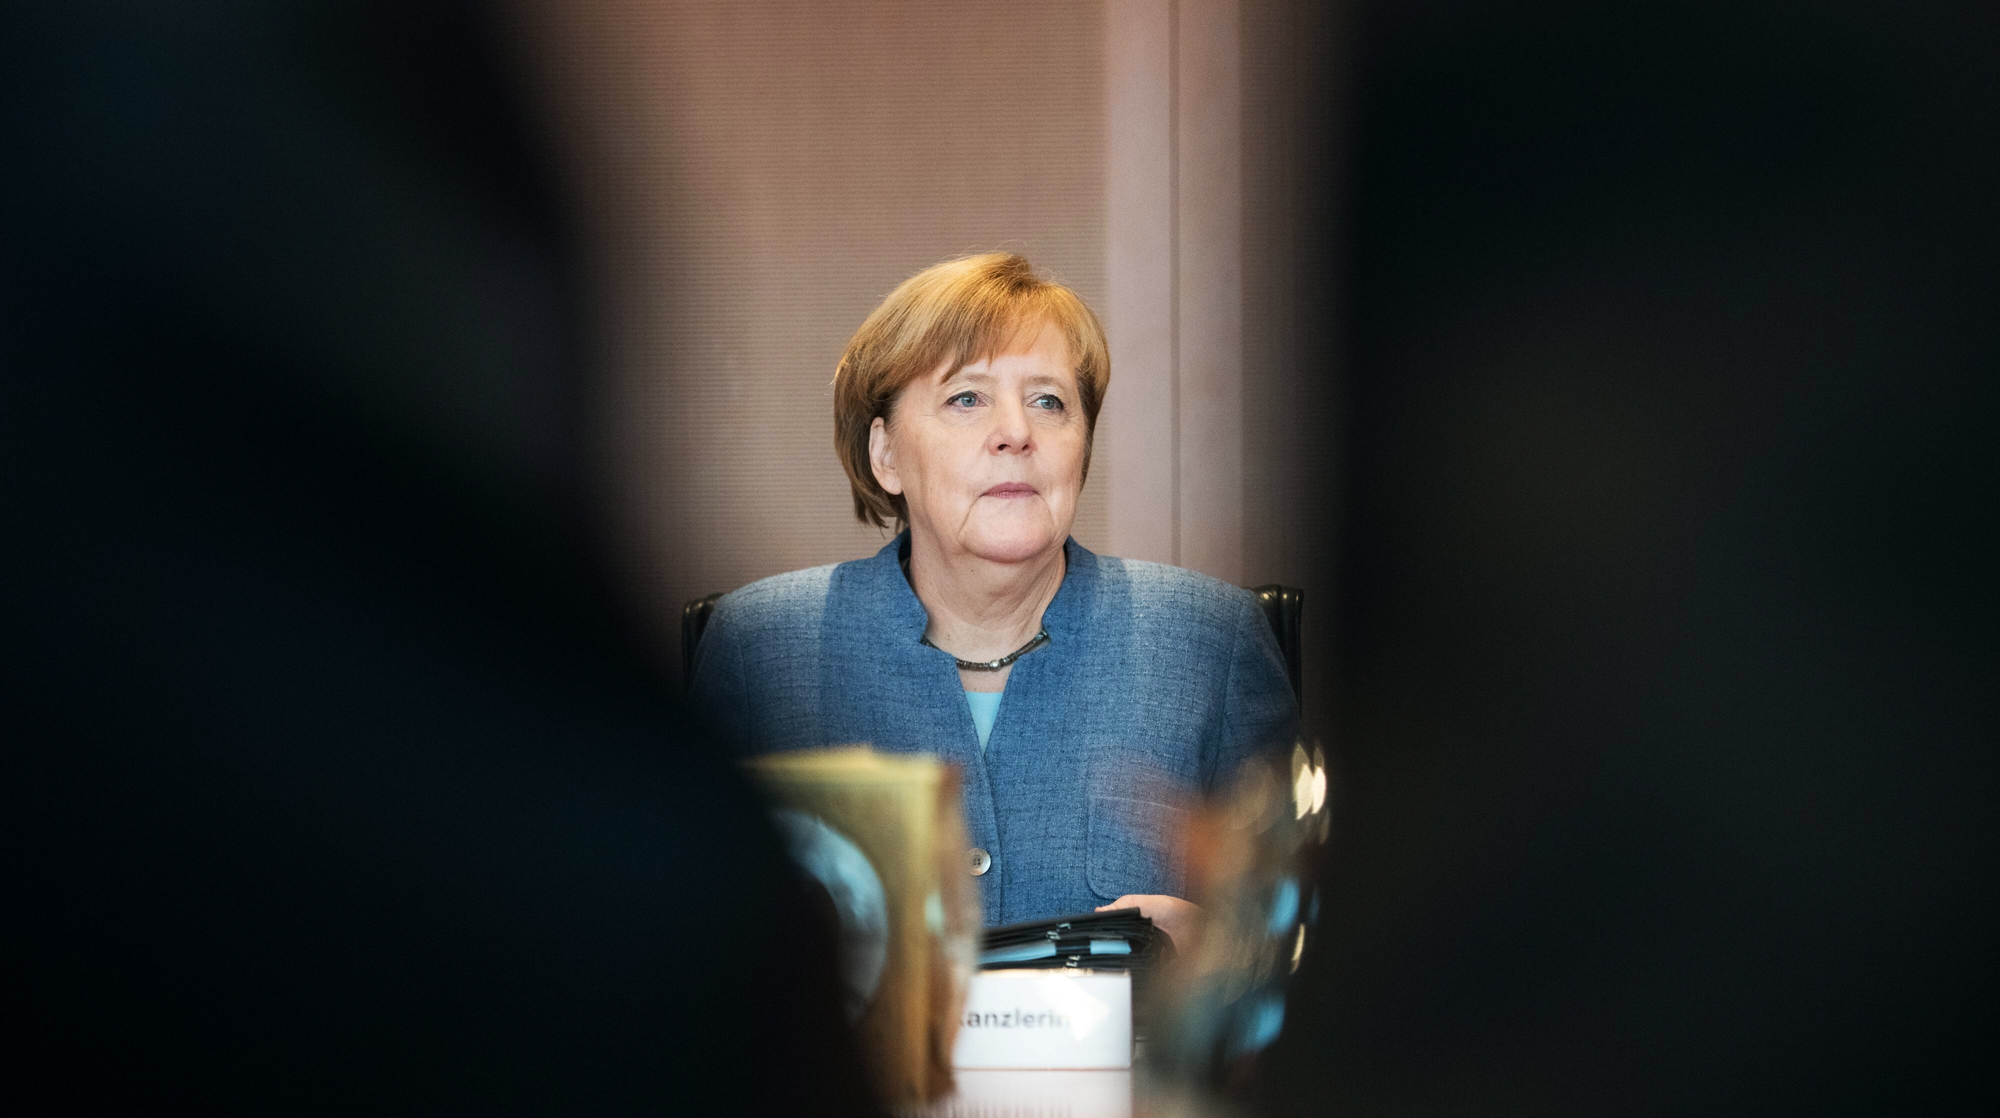 Журналист Игорь Мальцев — о том, стоит ли ждать бесславного финала фрау Меркель Фото: © GLOBAL LOOK press/Steffi Loos